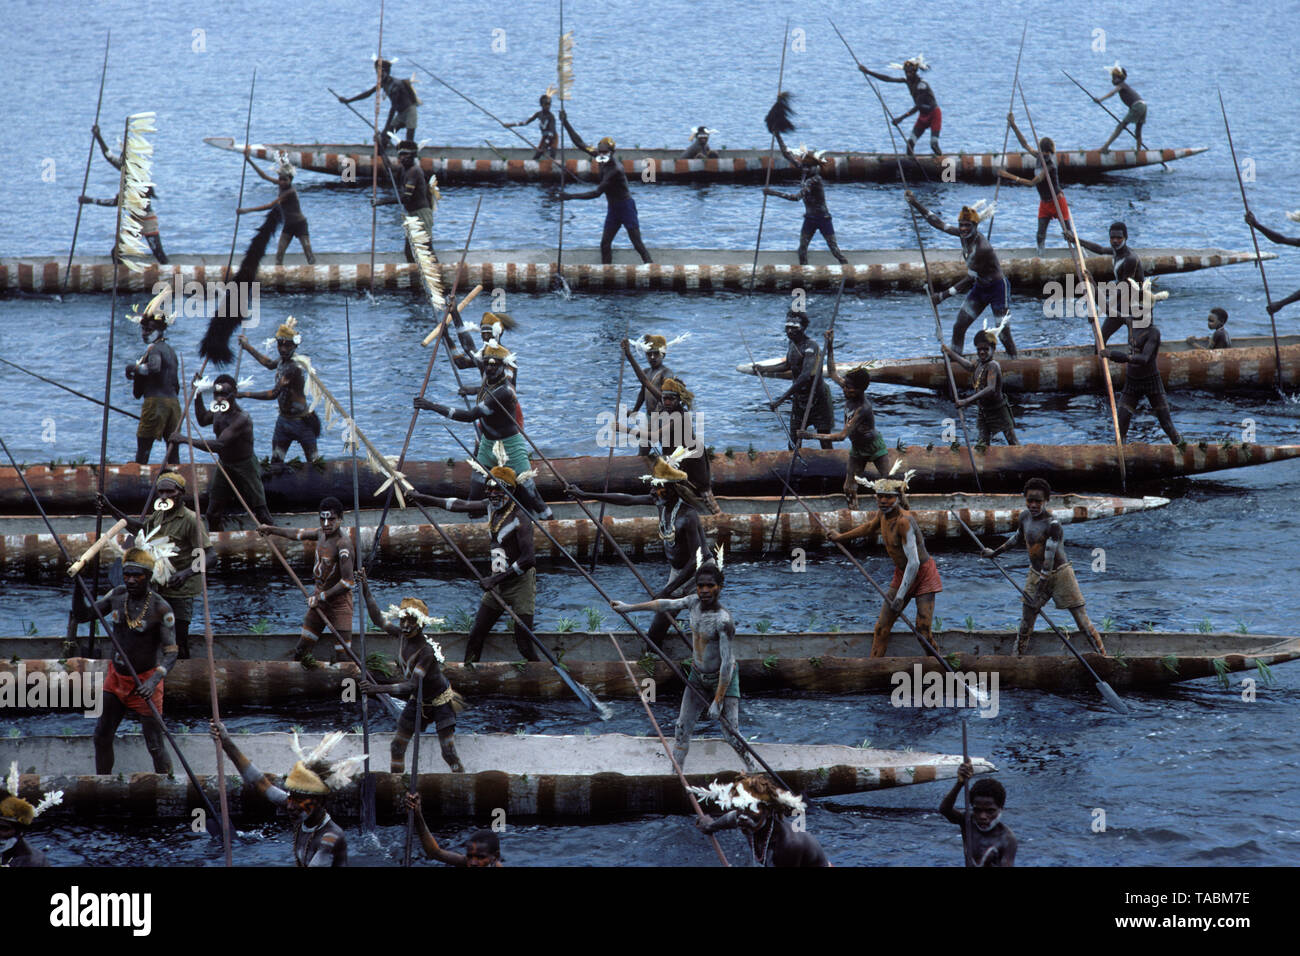 Asmat Personen: ethnische Gruppe leben in der Provinz Papua in Indonesien, entlang der Arafura Meer. Anzeige der Kanus in Agats - Sjuru. Foto: F genommen Stockfoto